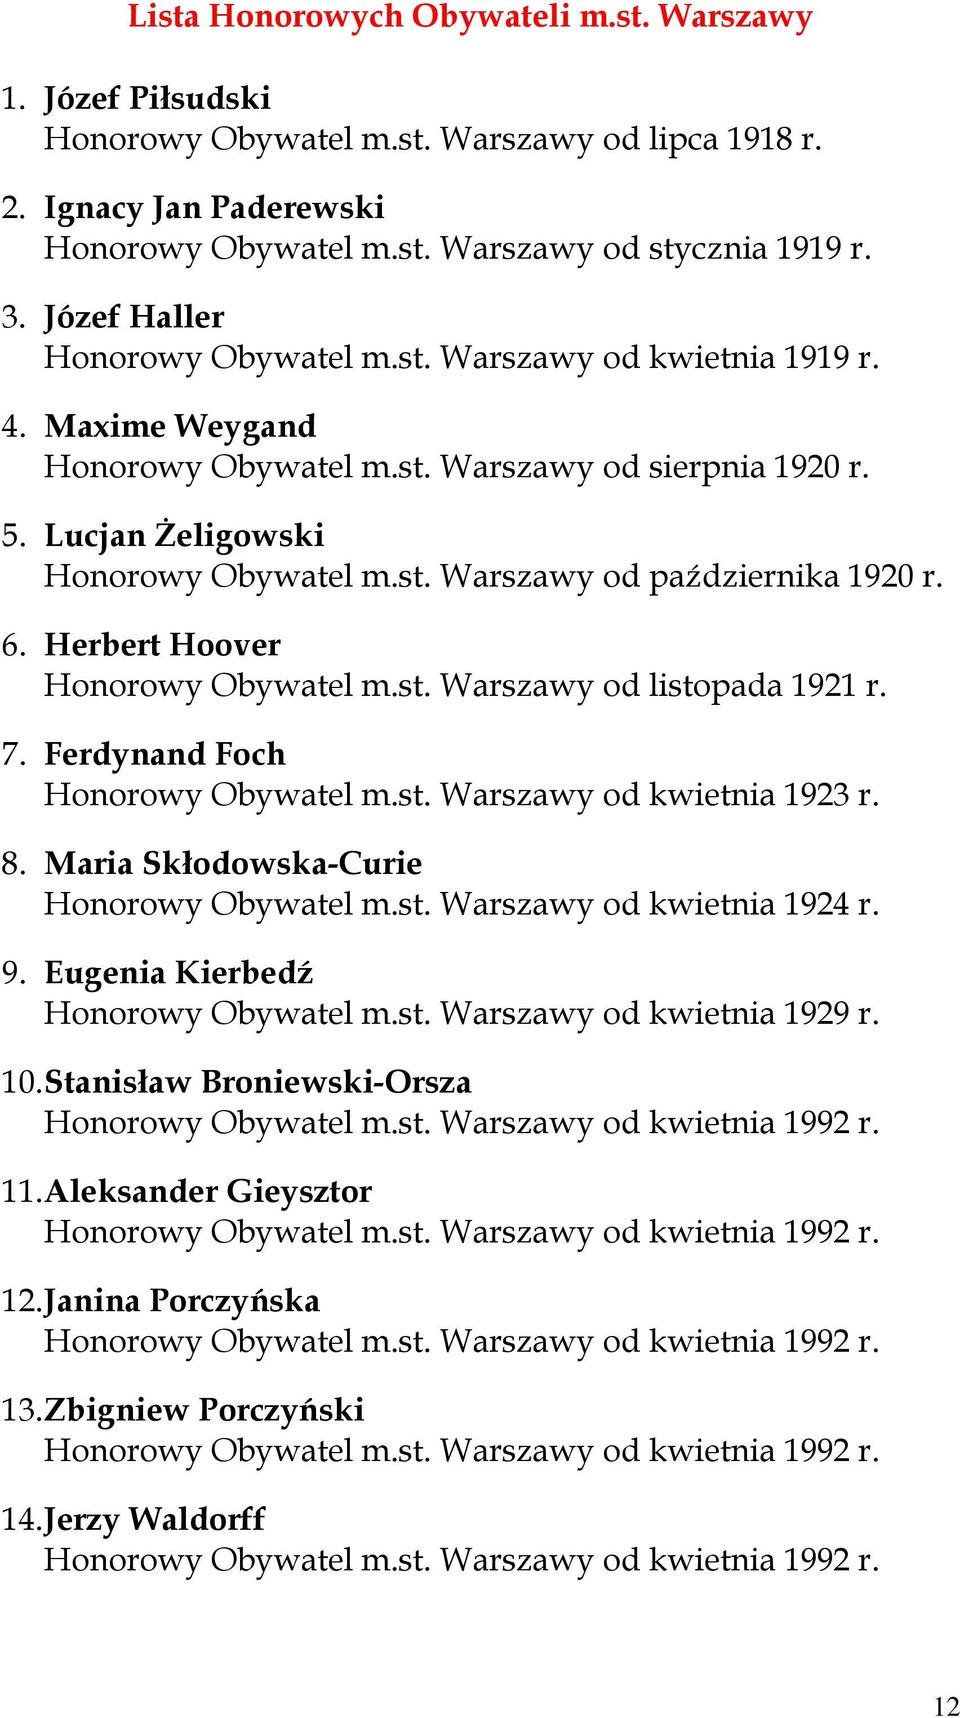 6. Herbert Hoover Honorowy Obywatel m.st. Warszawy od listopada 1921 r. 7. Ferdynand Foch Honorowy Obywatel m.st. Warszawy od kwietnia 1923 r. 8. Maria Skłodowska-Curie Honorowy Obywatel m.st. Warszawy od kwietnia 1924 r.